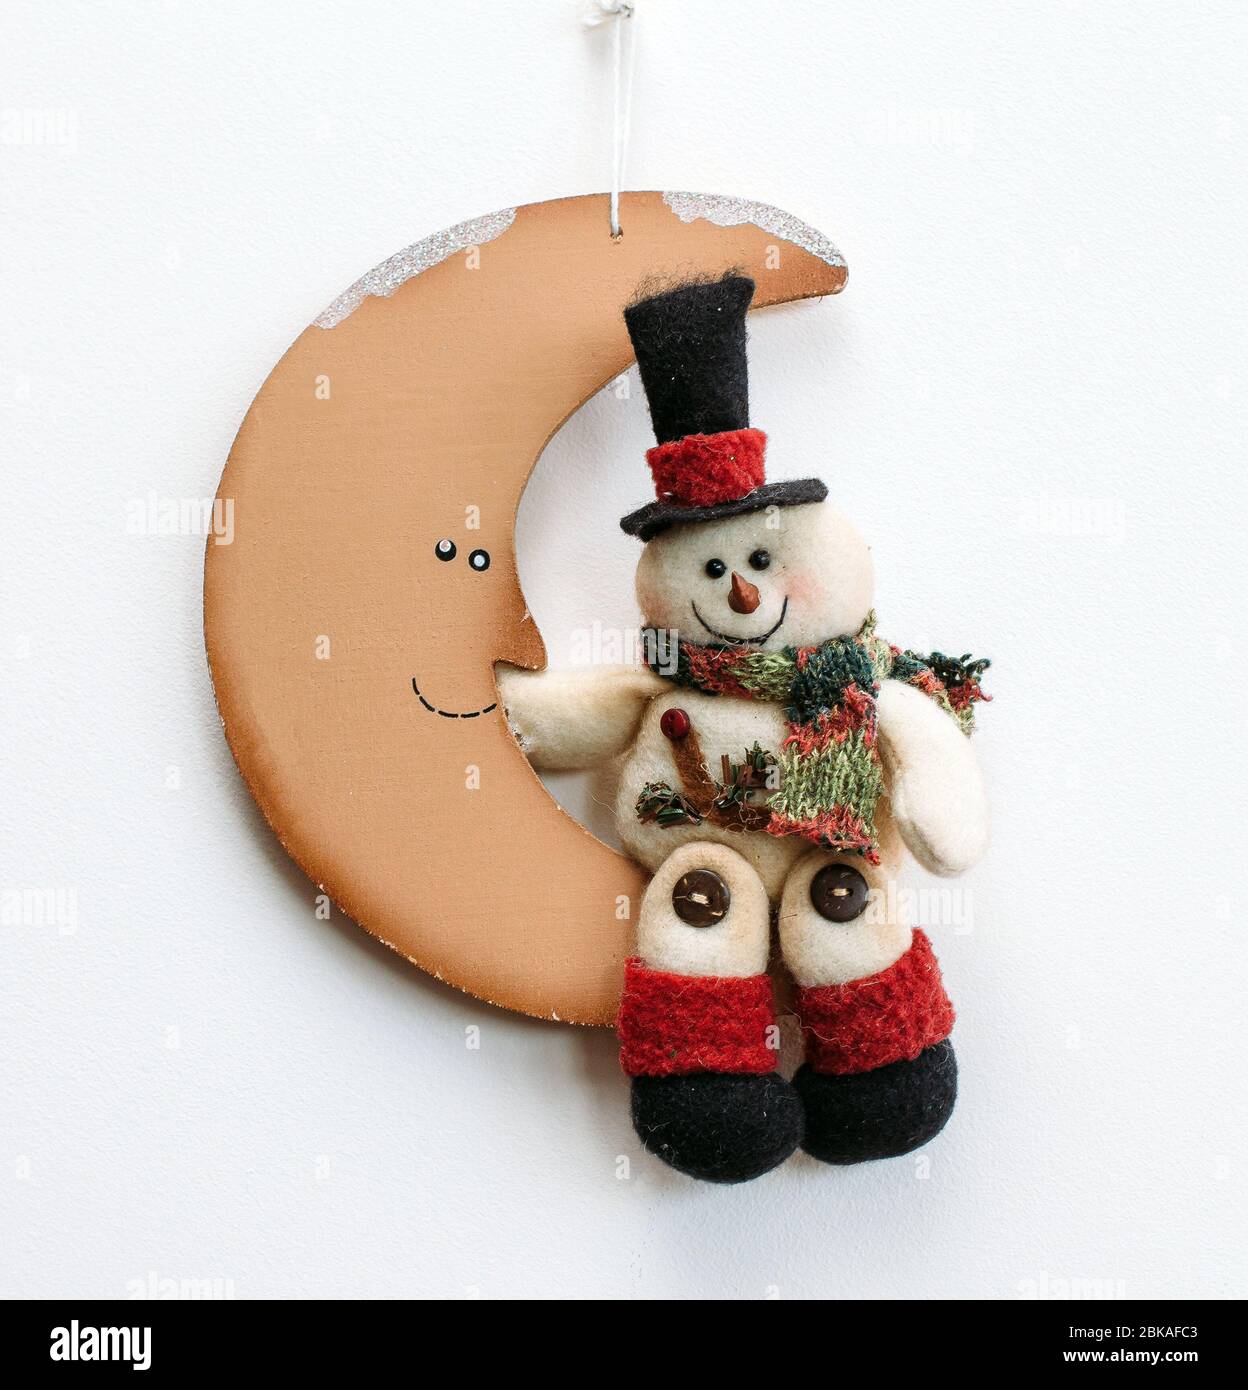 snowman on the moon Stock Photo